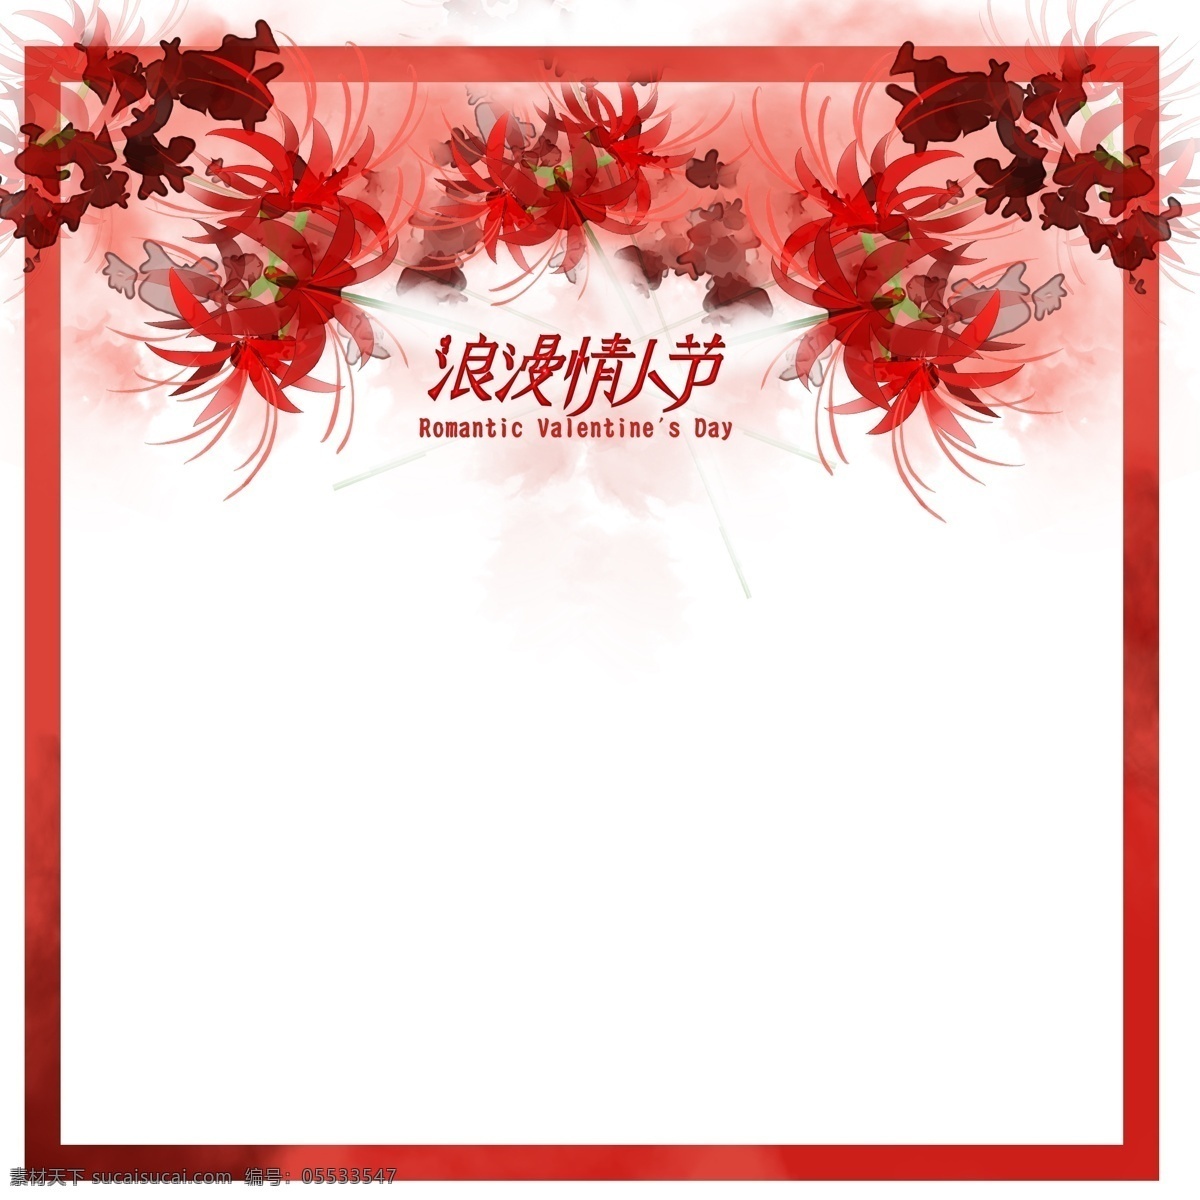 浪漫 情人节 红色 正方形 边框 边框纹理 红色边框 正方形边框 浪漫情人节 庆祝 红色花朵 喜庆 创意 创意设计